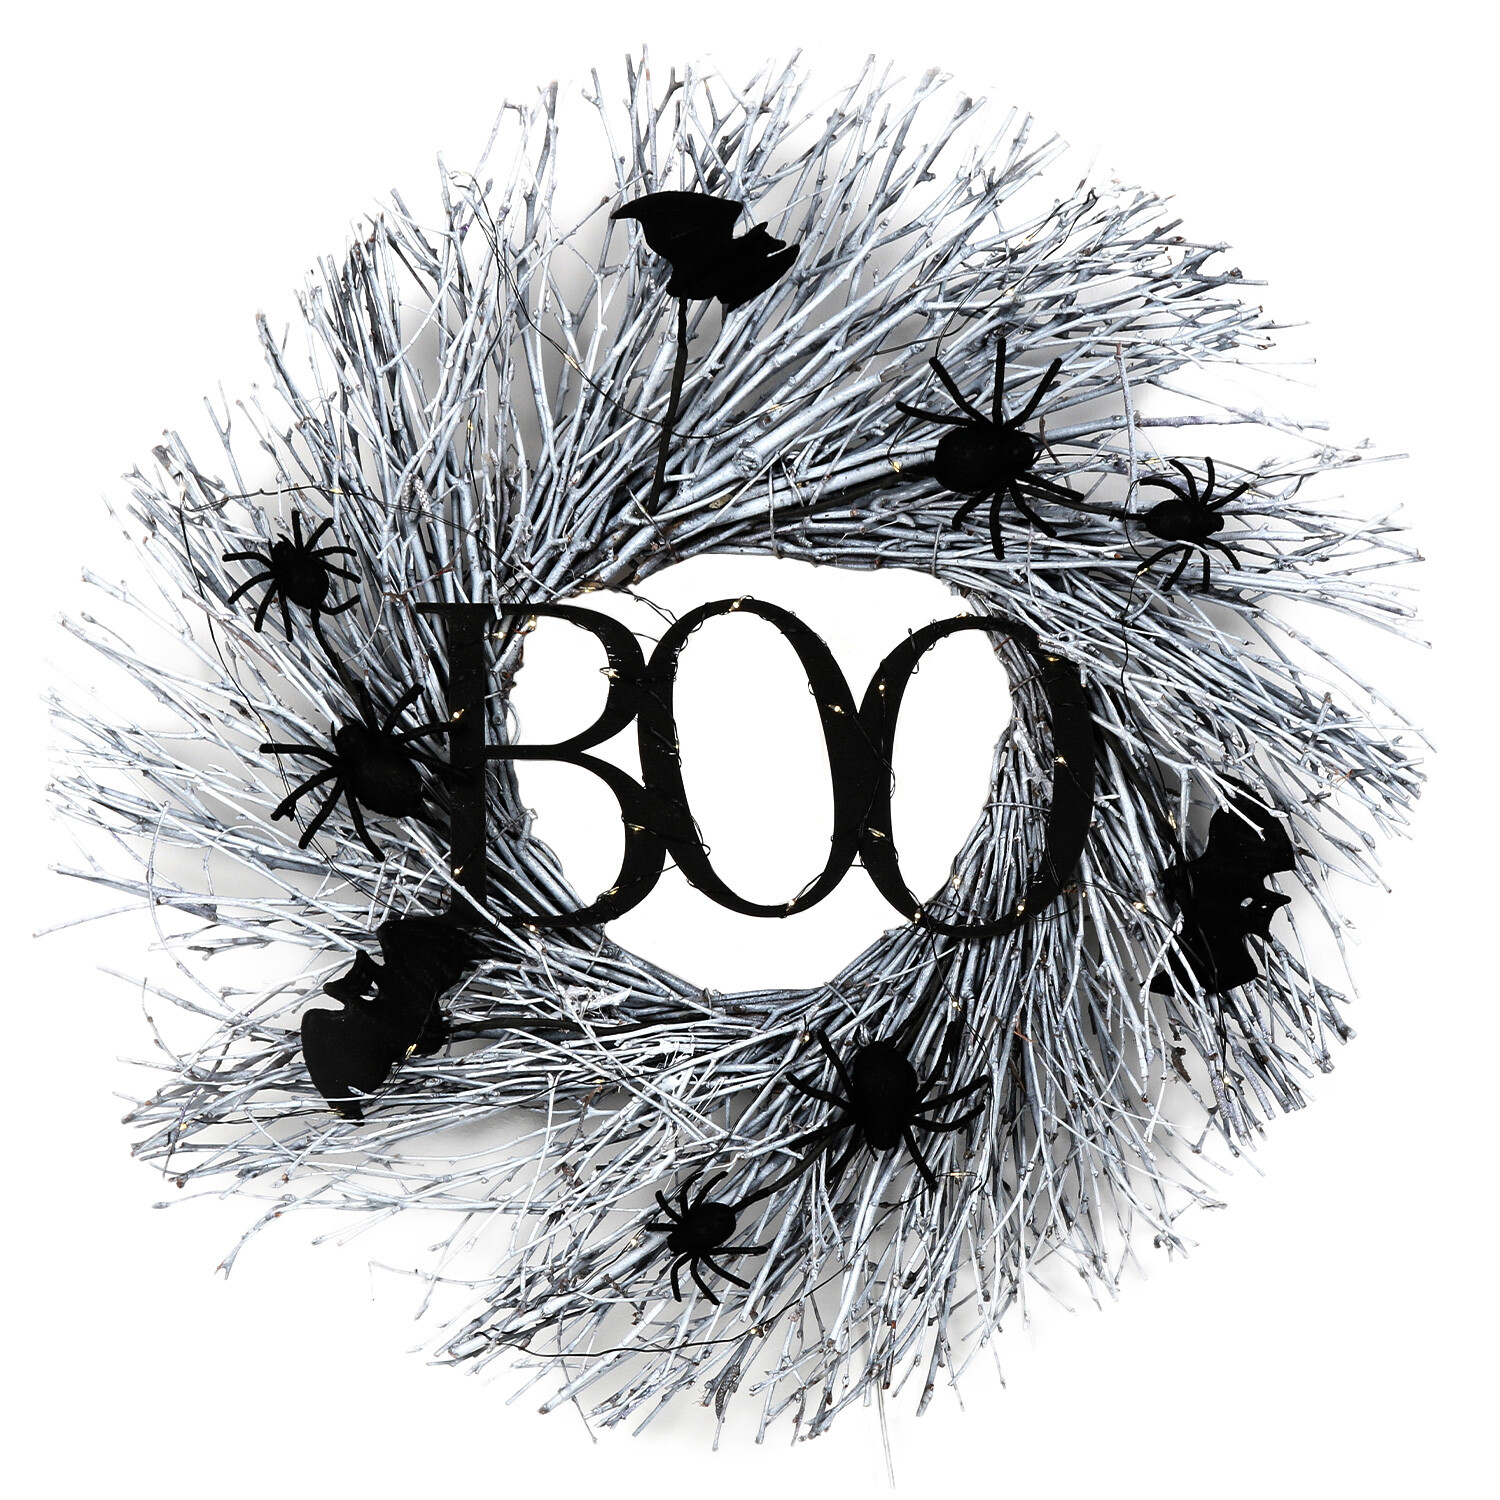 LED Boo Wreath - Black Image 1